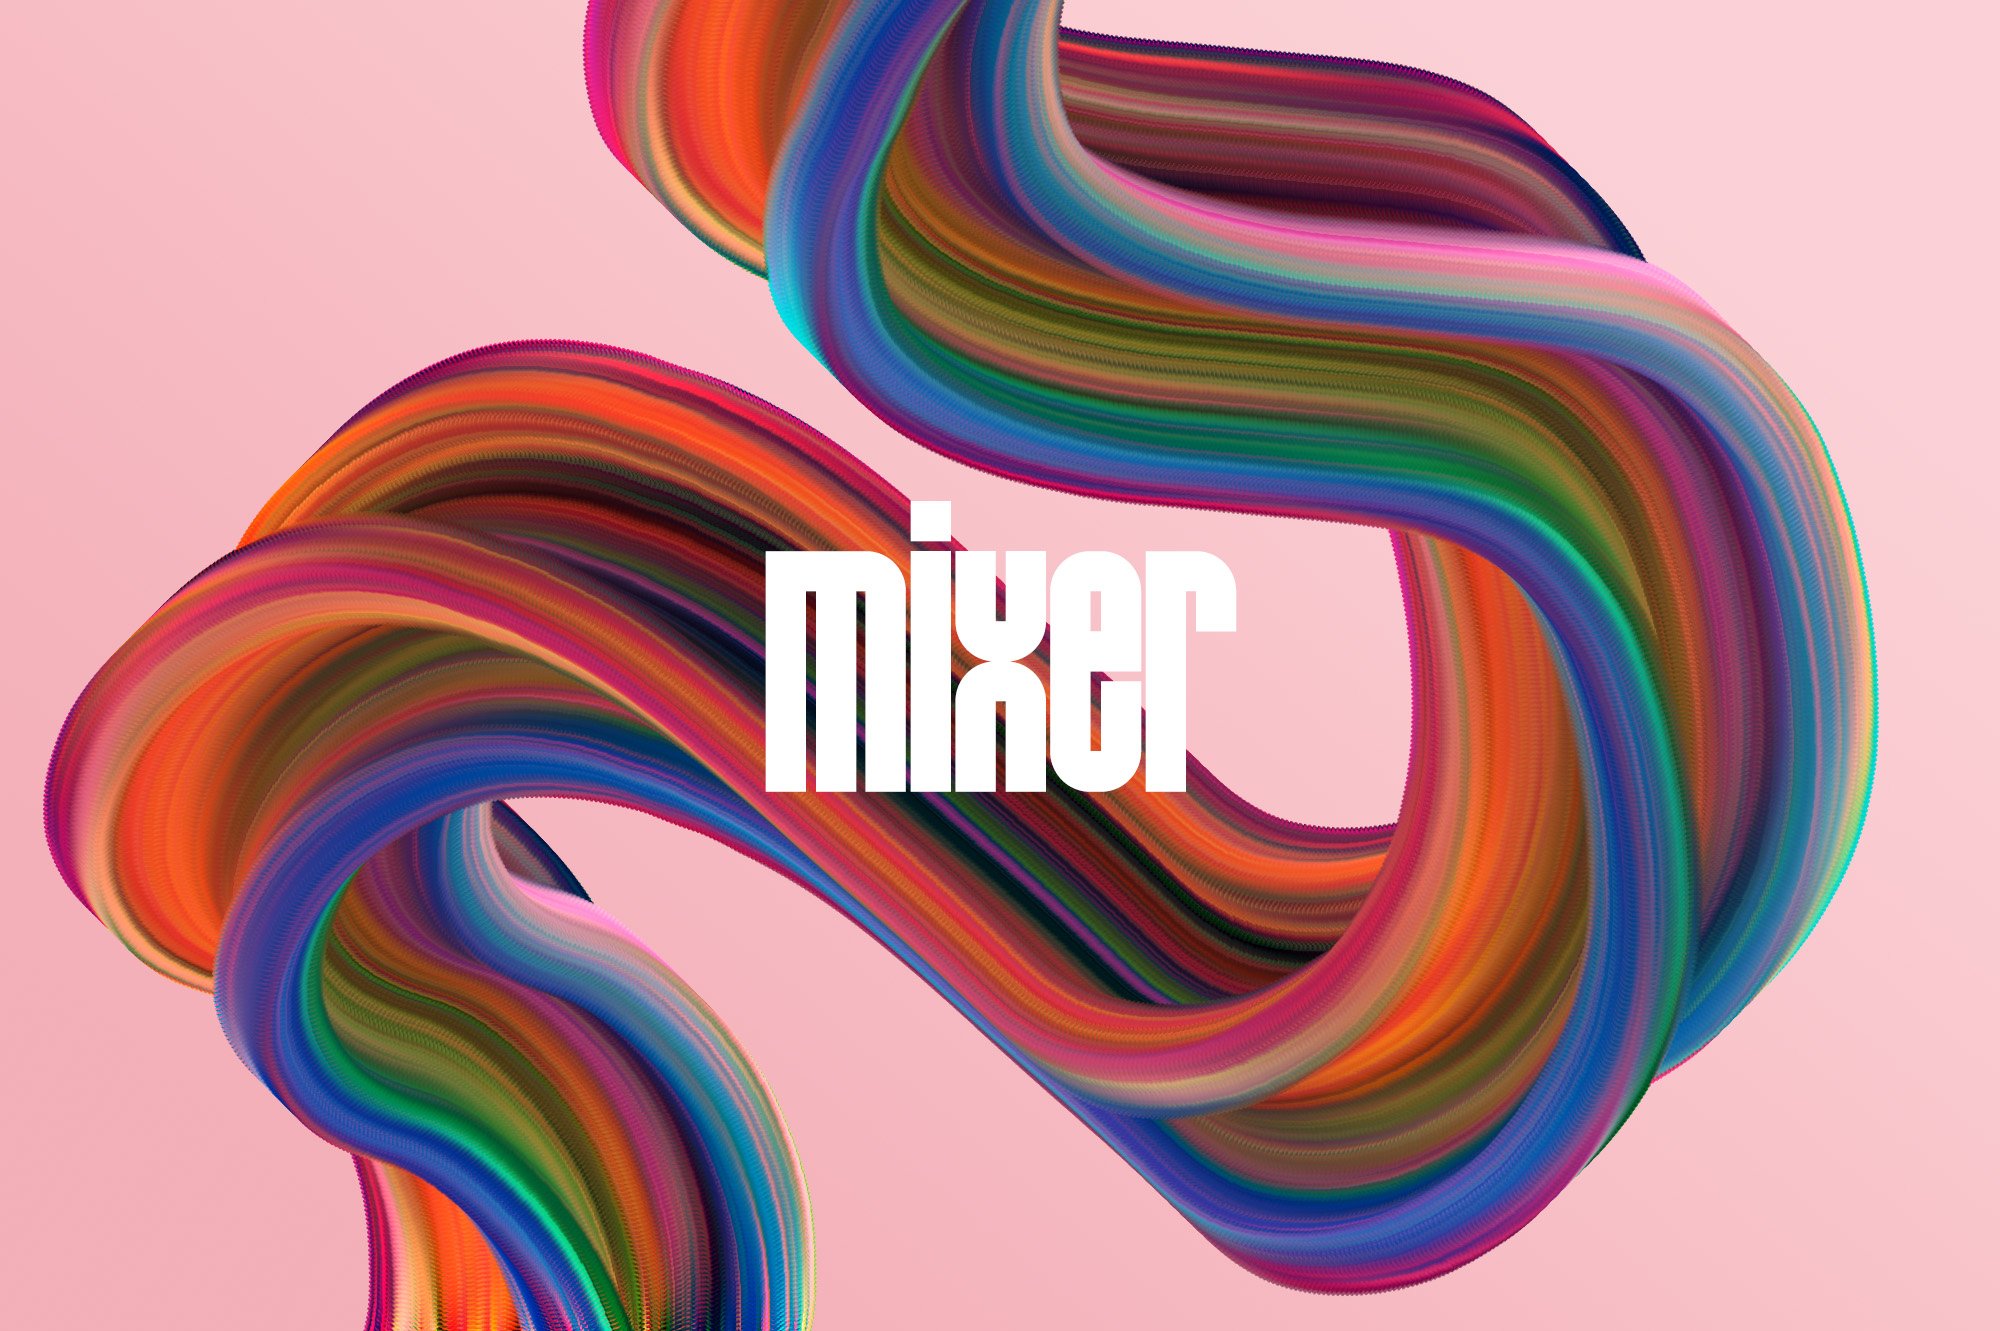 12 mixer preview example 01 861